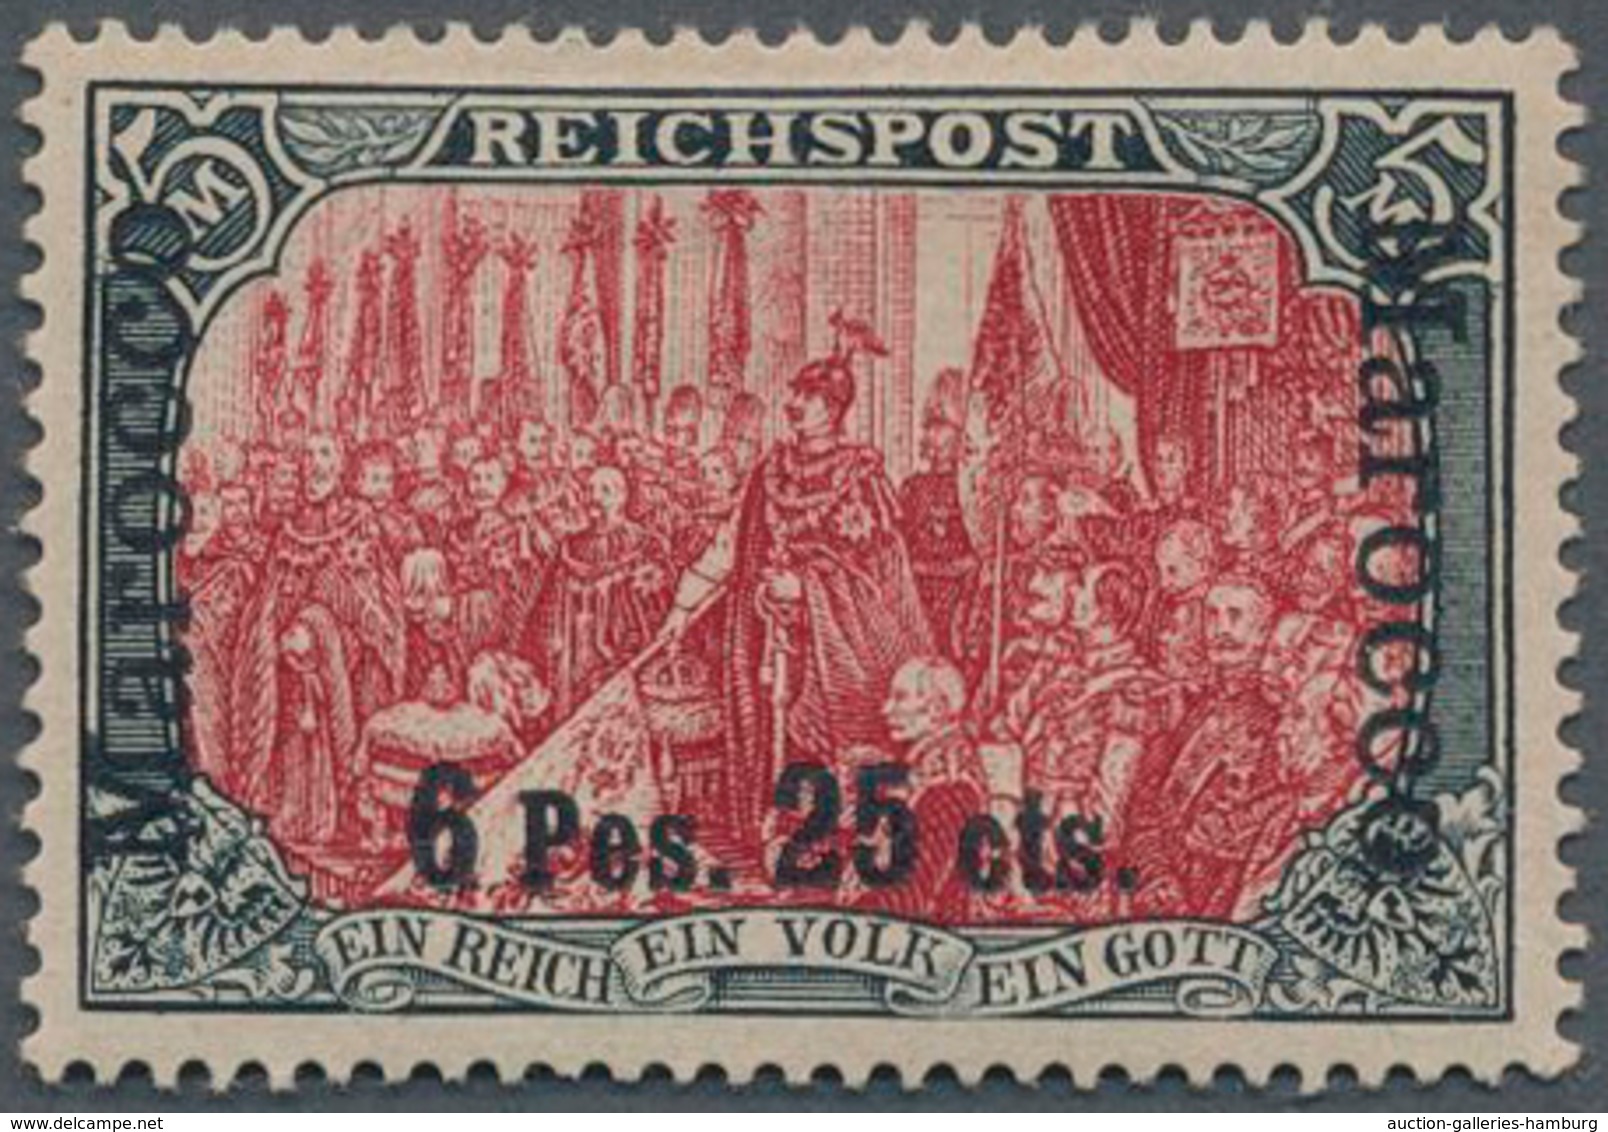 Deutsche Post In Marokko: 1900, 6 Pes. 25 Cts. Auf 5 Mark "Reichspost", Sog. Dünner Aufdruck, Type I - Marruecos (oficinas)